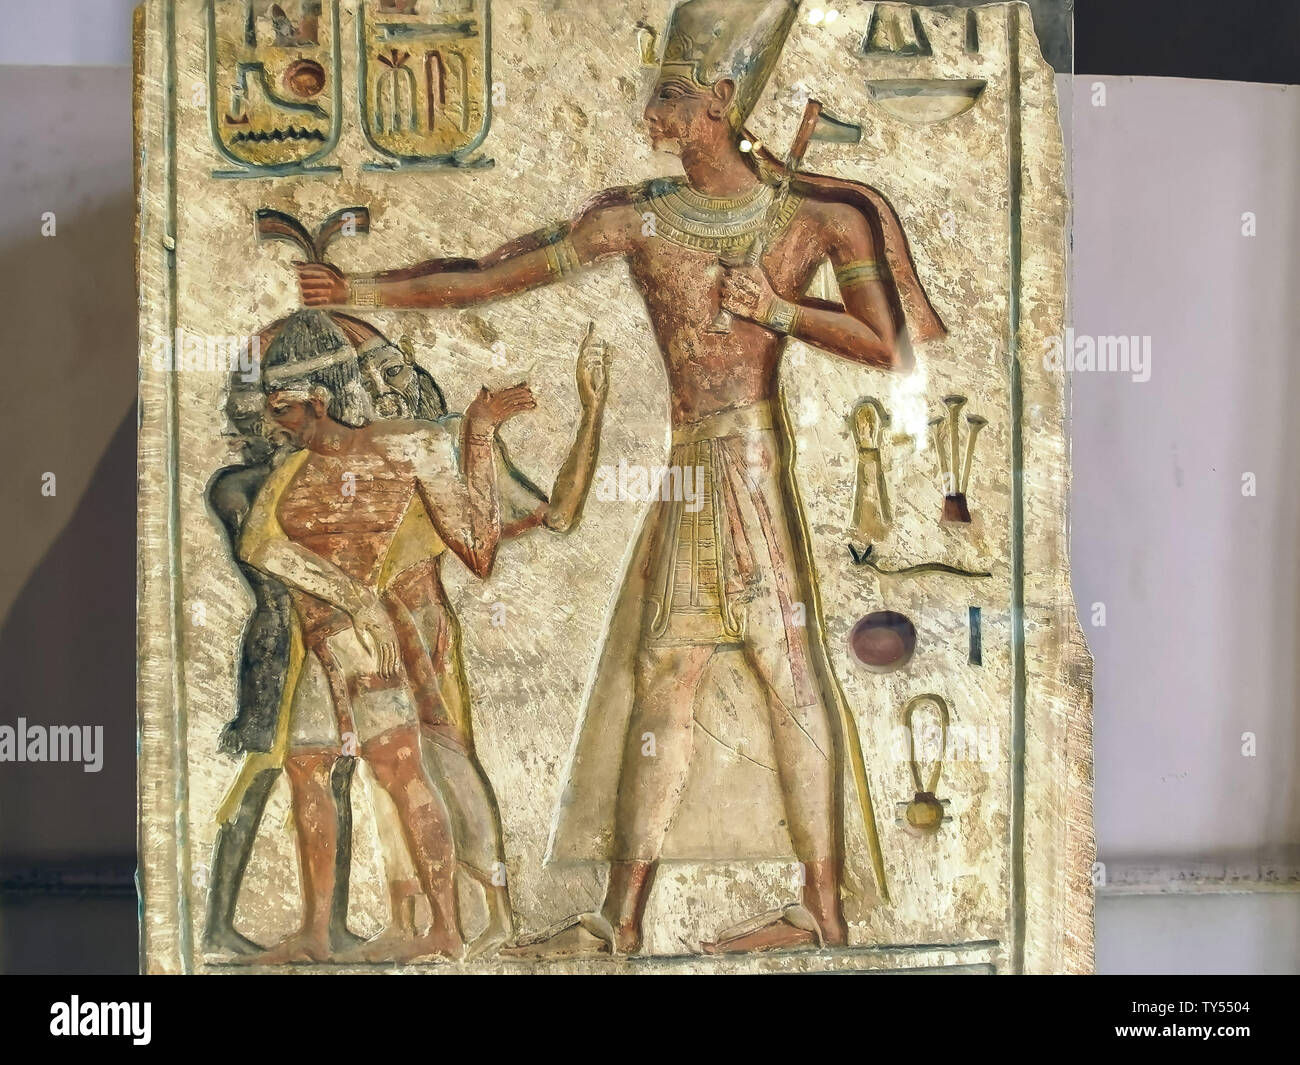 Le Caire, Egypte- septembre, 26, 2016 : vue d'une stèle portant l'image de Ramsès II au Caire Banque D'Images